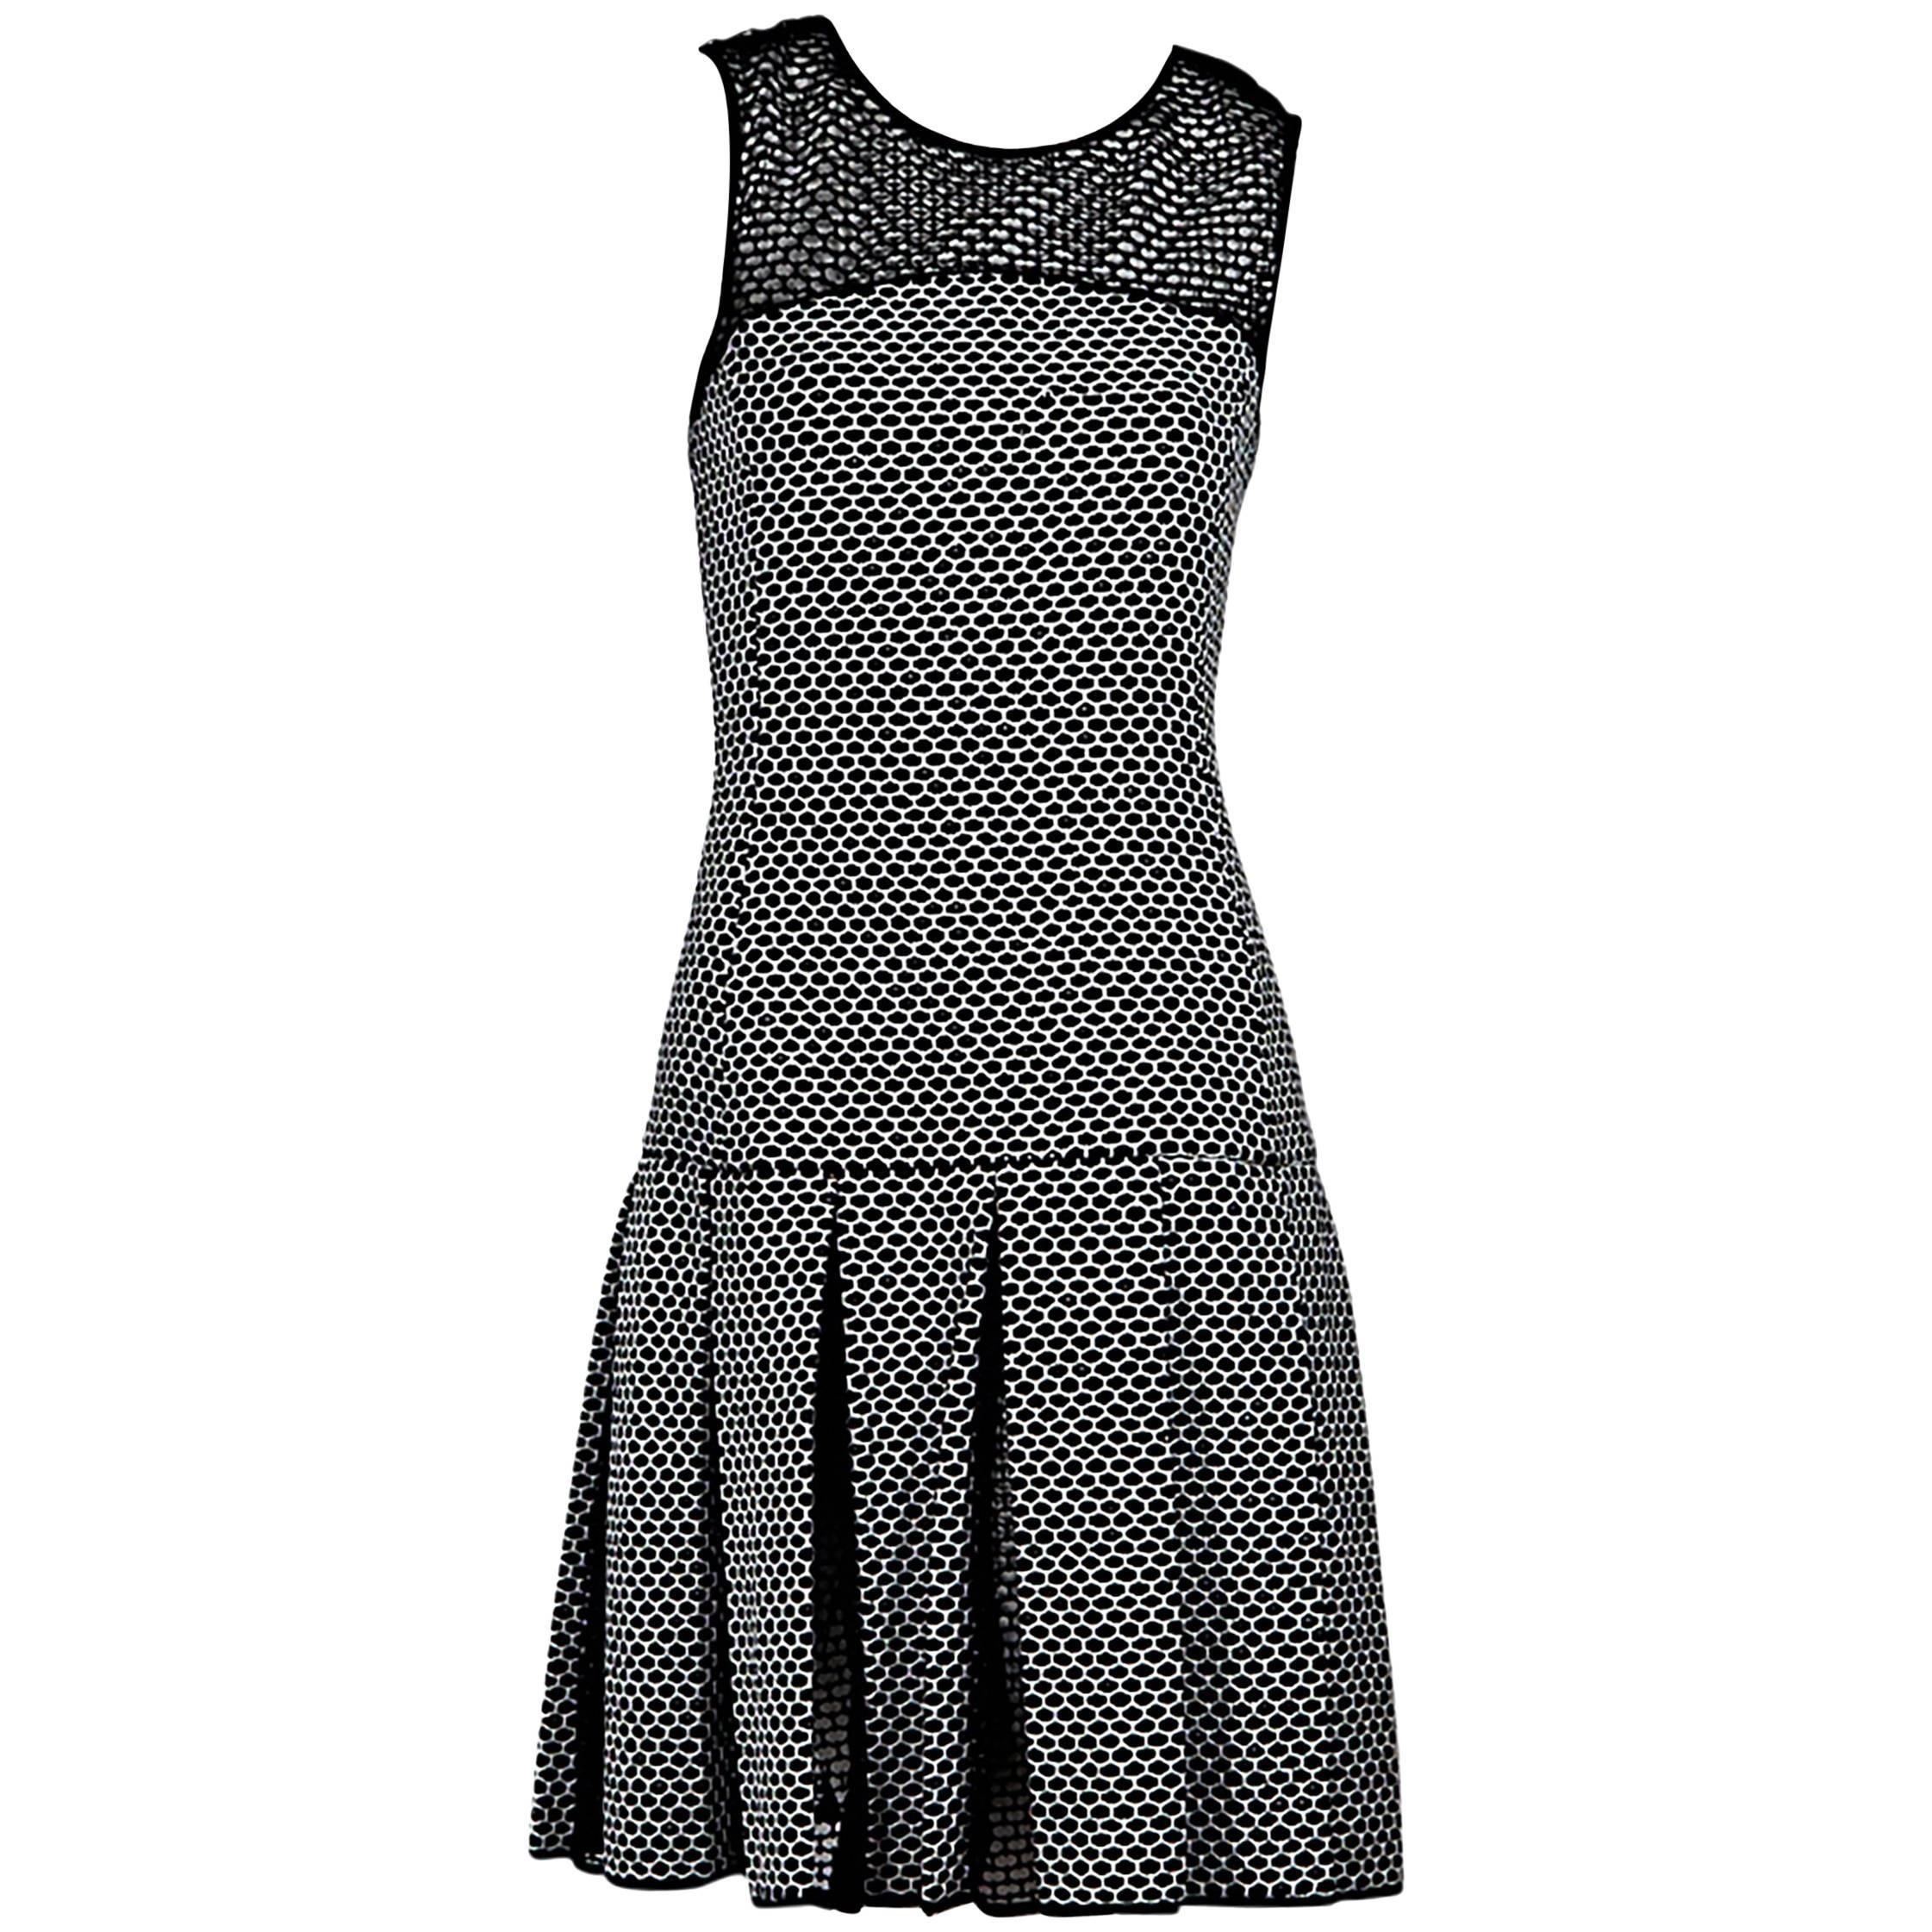 Black & White Oscar de la Renta Drop-Waist Dress